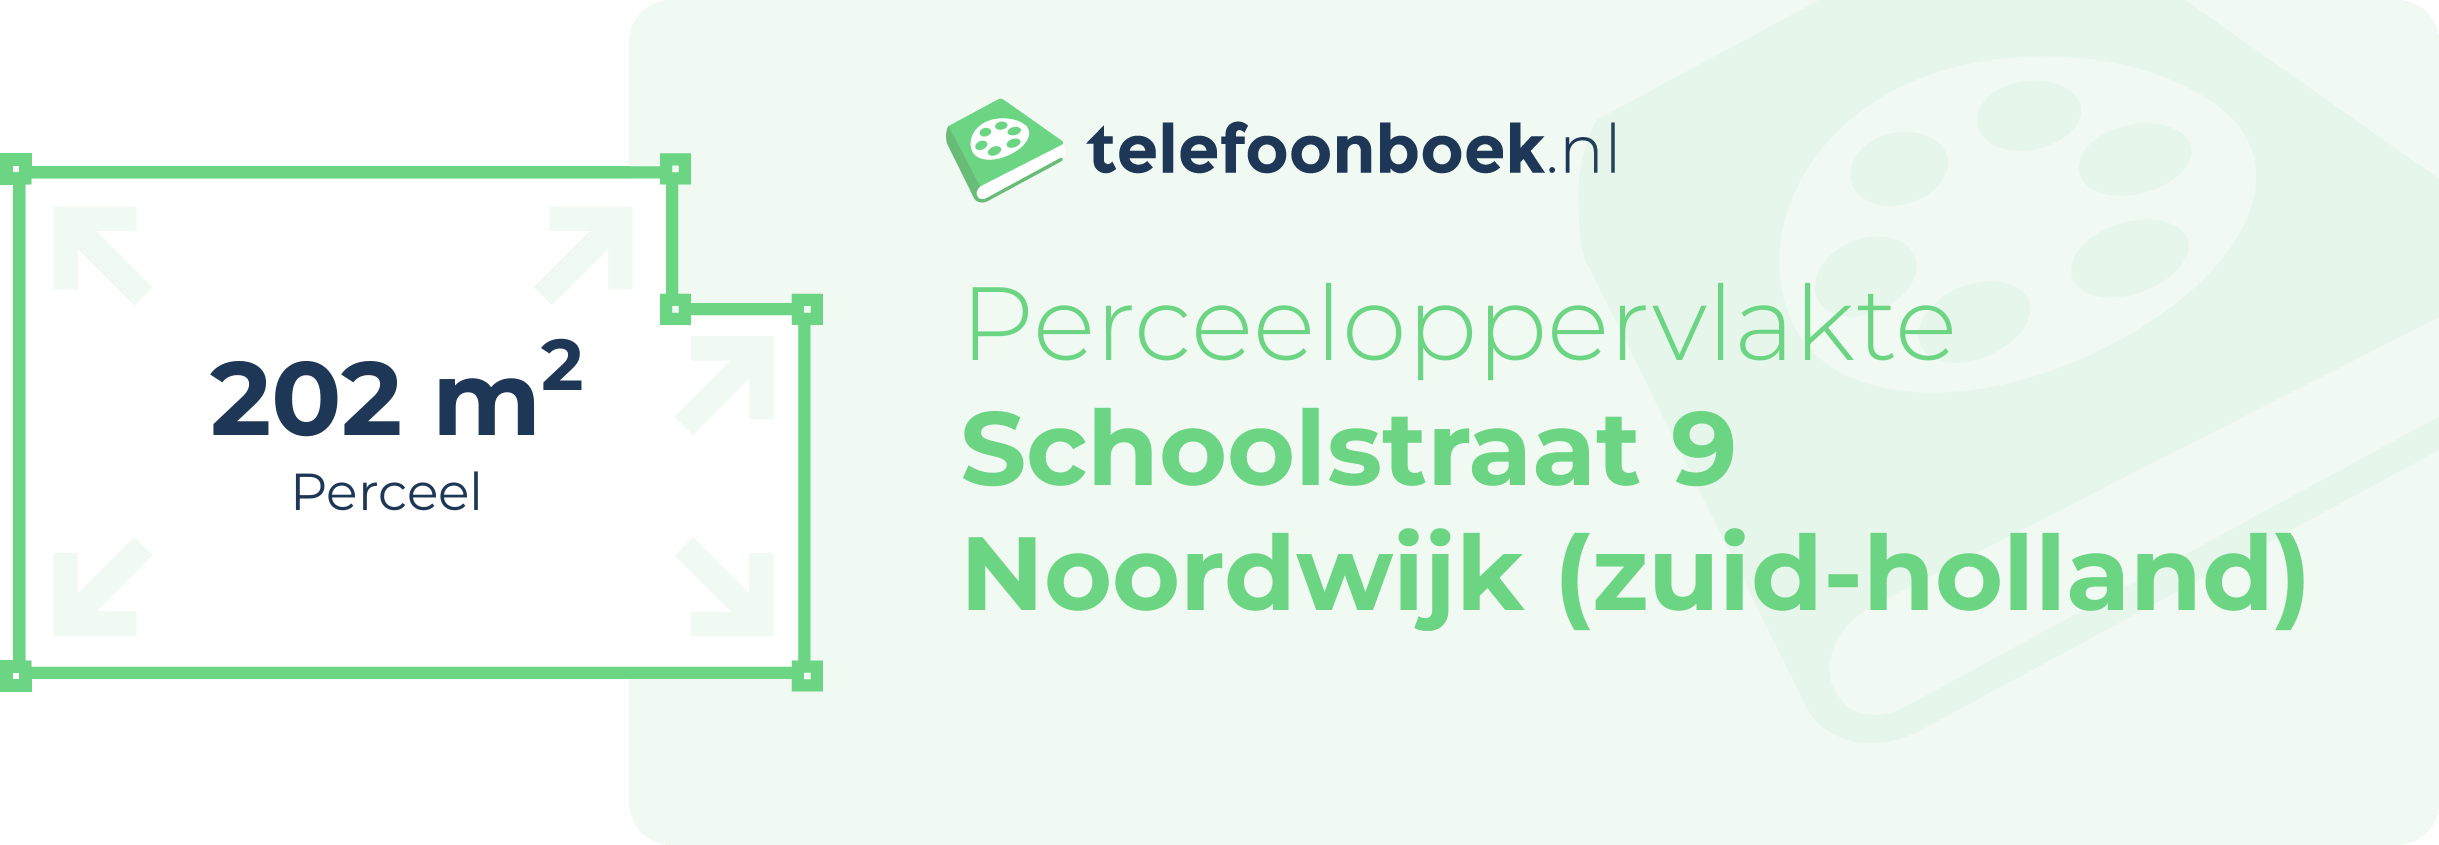 Perceeloppervlakte Schoolstraat 9 Noordwijk (Zuid-Holland)